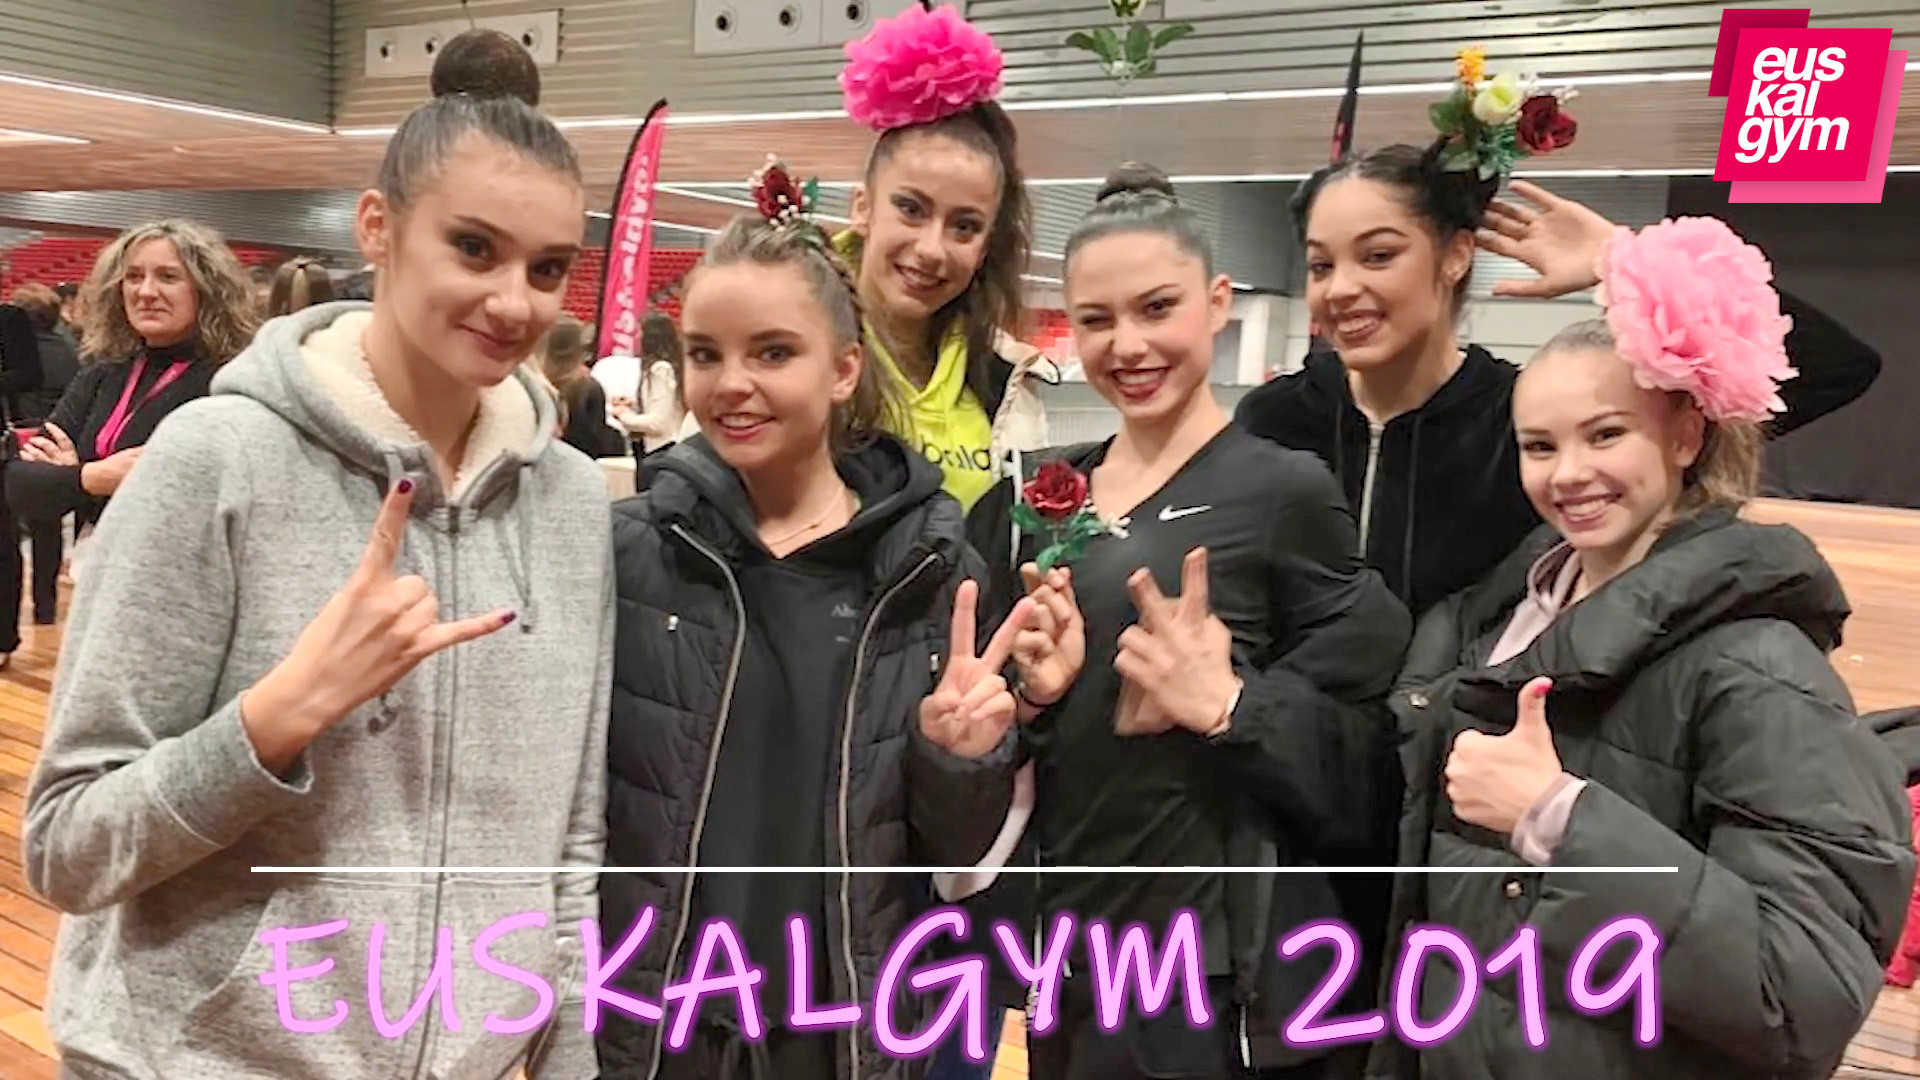 Harnosik Pictures Euskalgym 2019